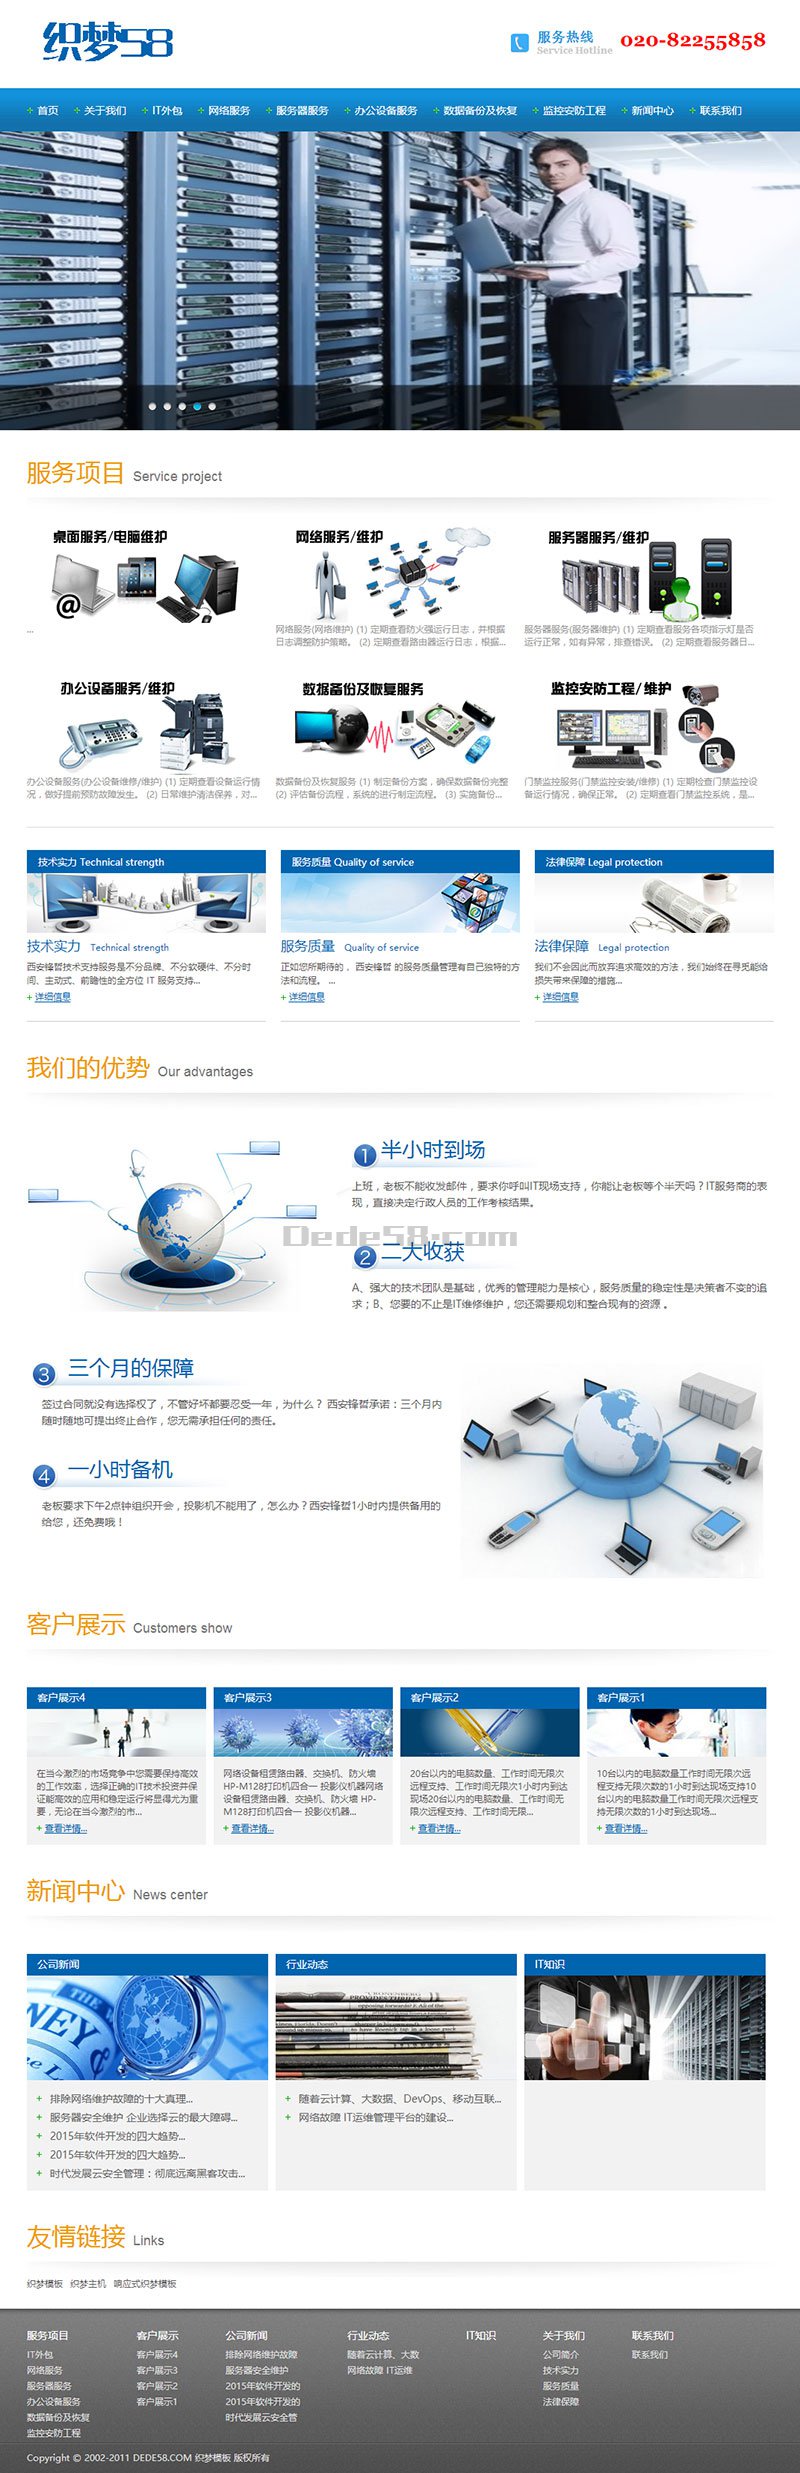 网络IT信息服务类企业网站织梦dedecms模板 第1张